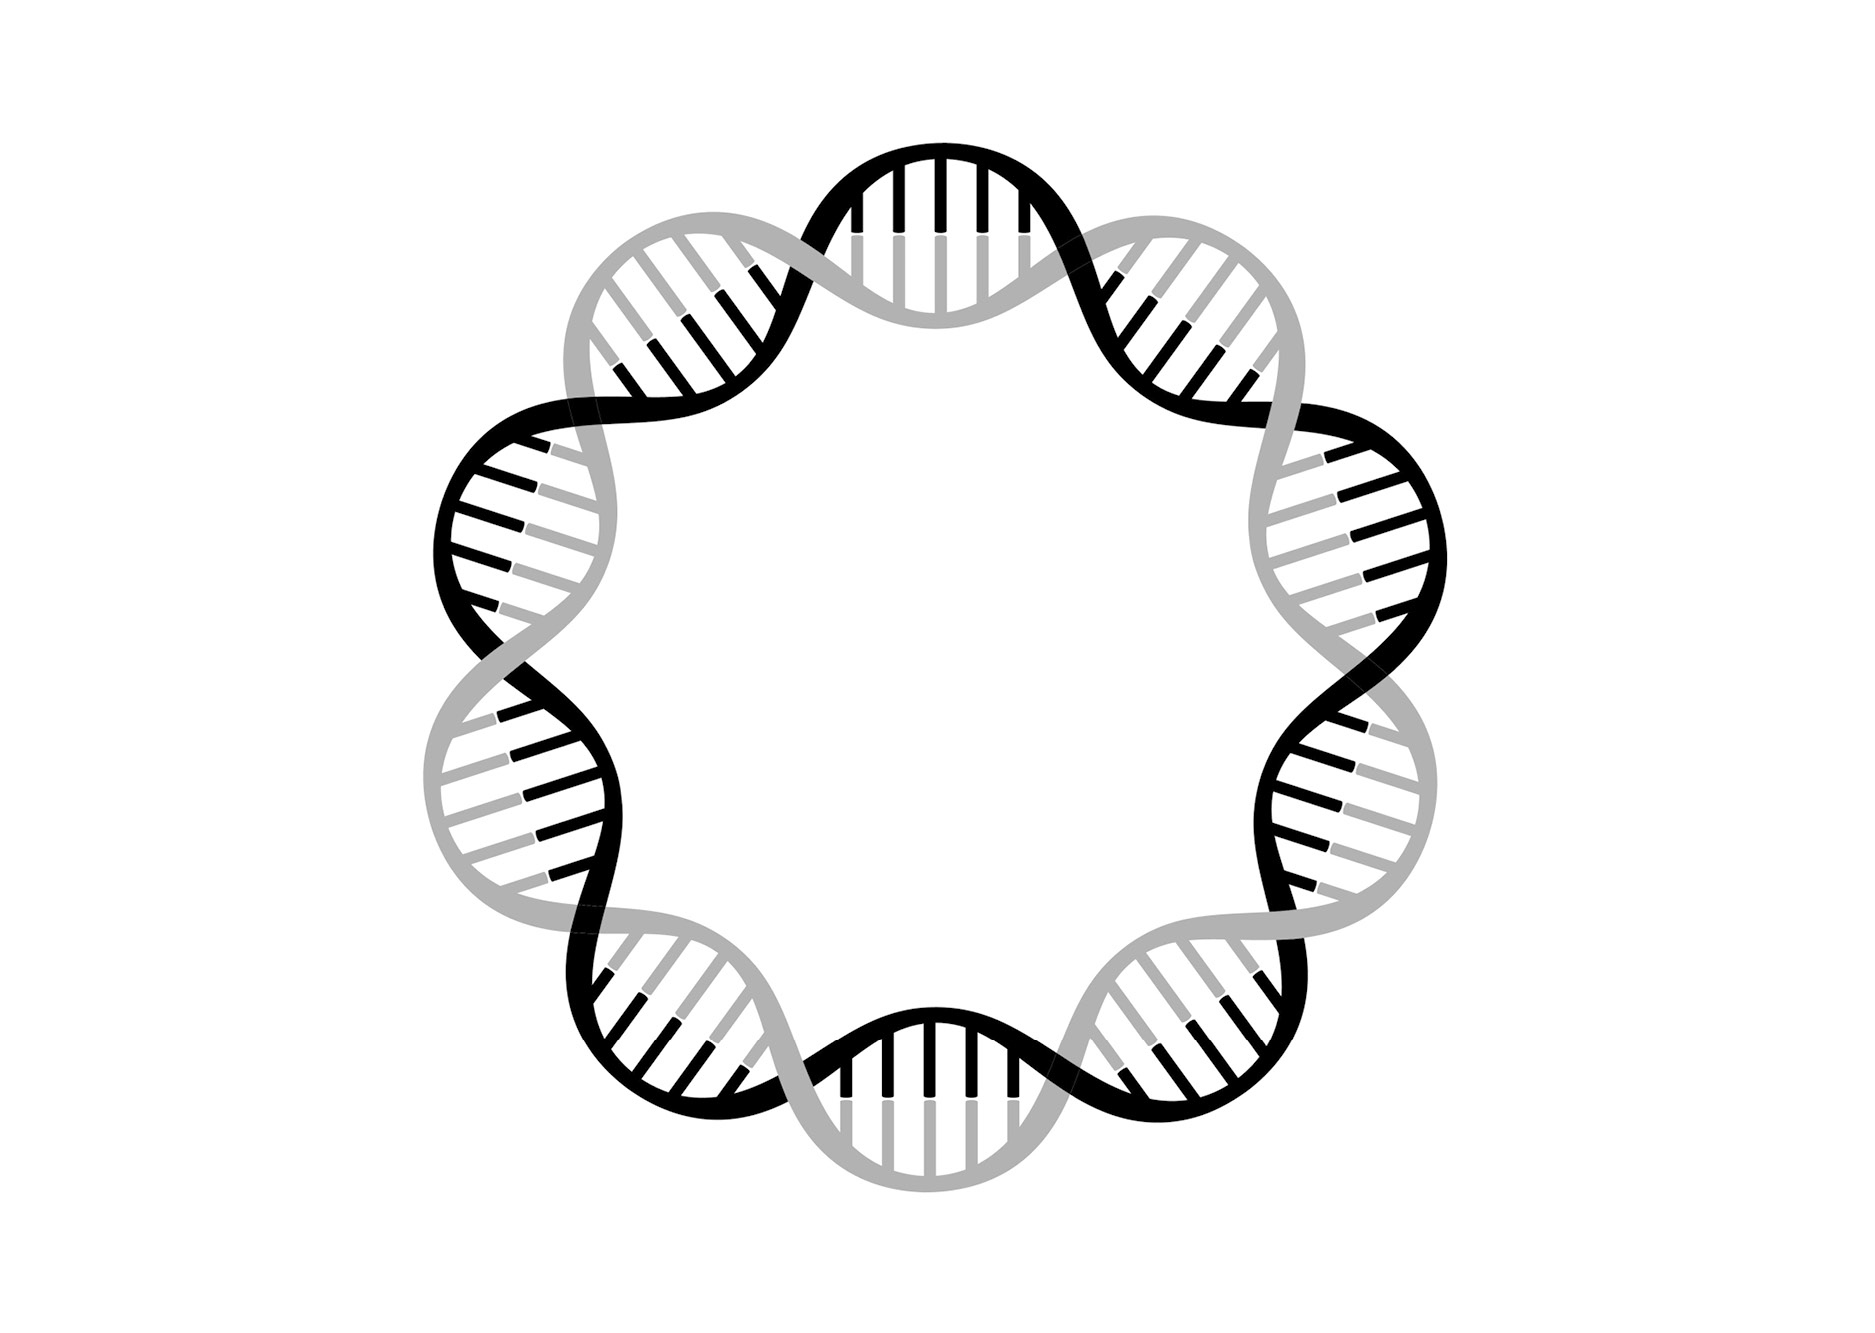 Startmaterial – RNA och Plasmid